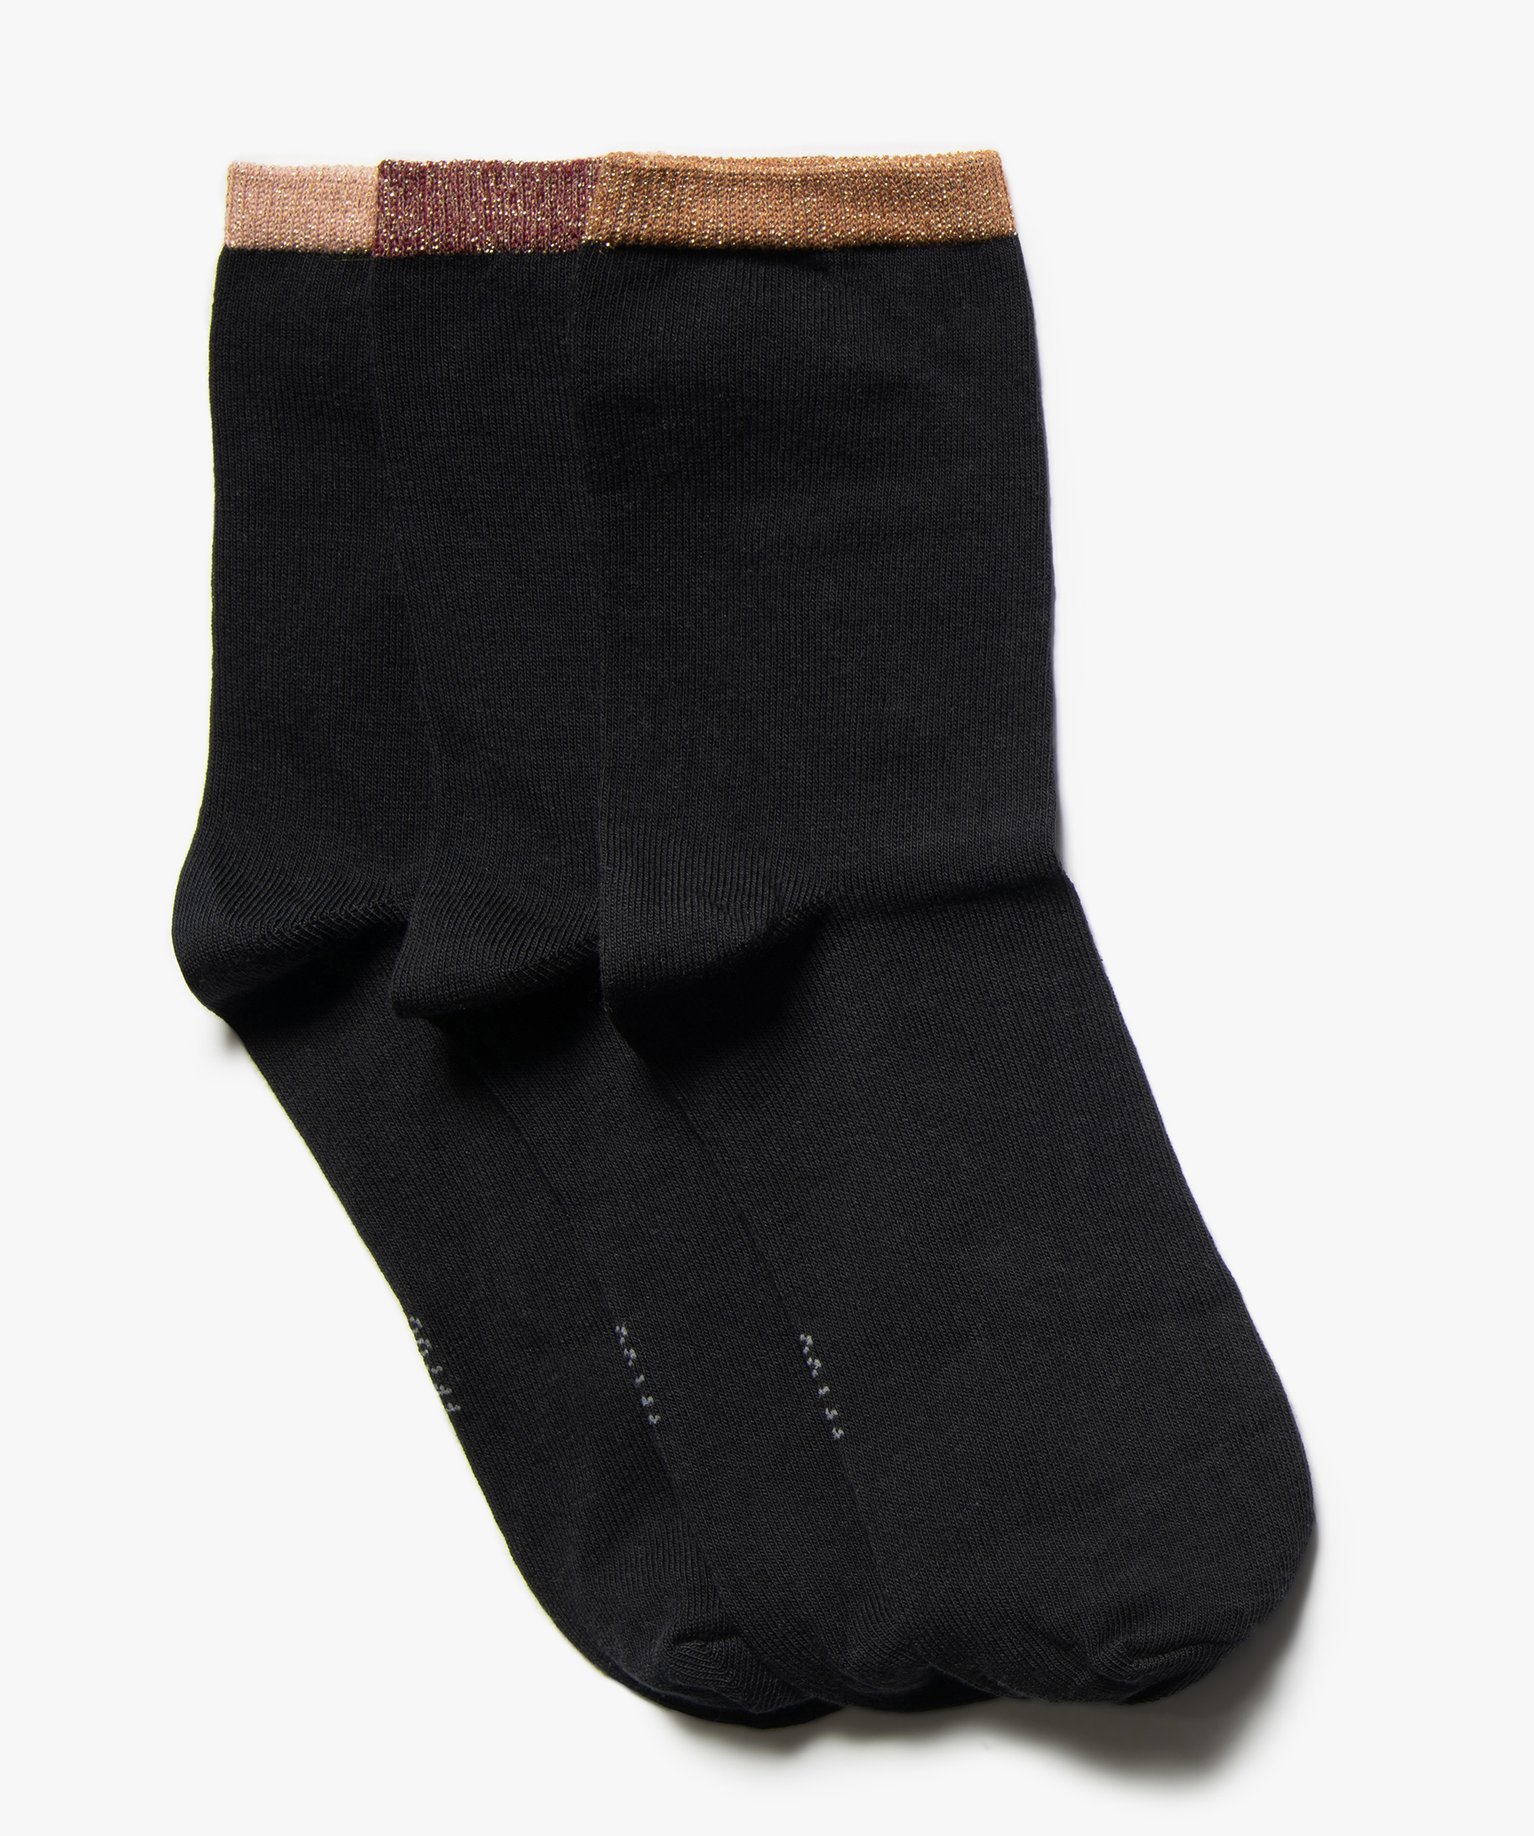 chaussettes femme details pailletes (lot de 3 paires) noir chaussettes